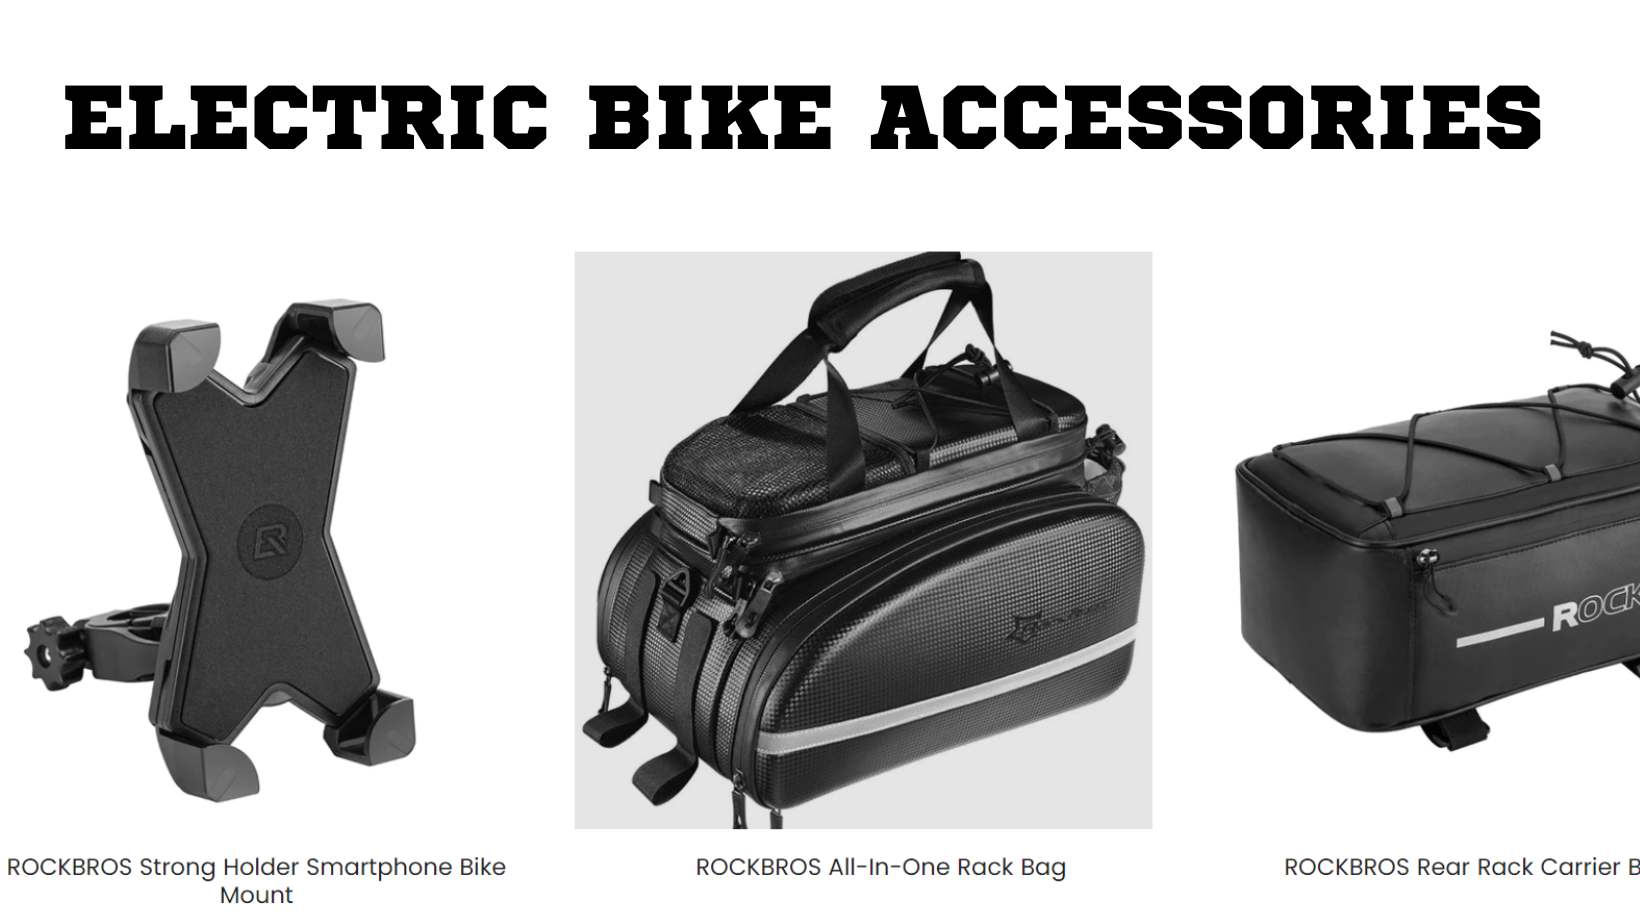 Range of E-Bike Accessories Troxus Offer